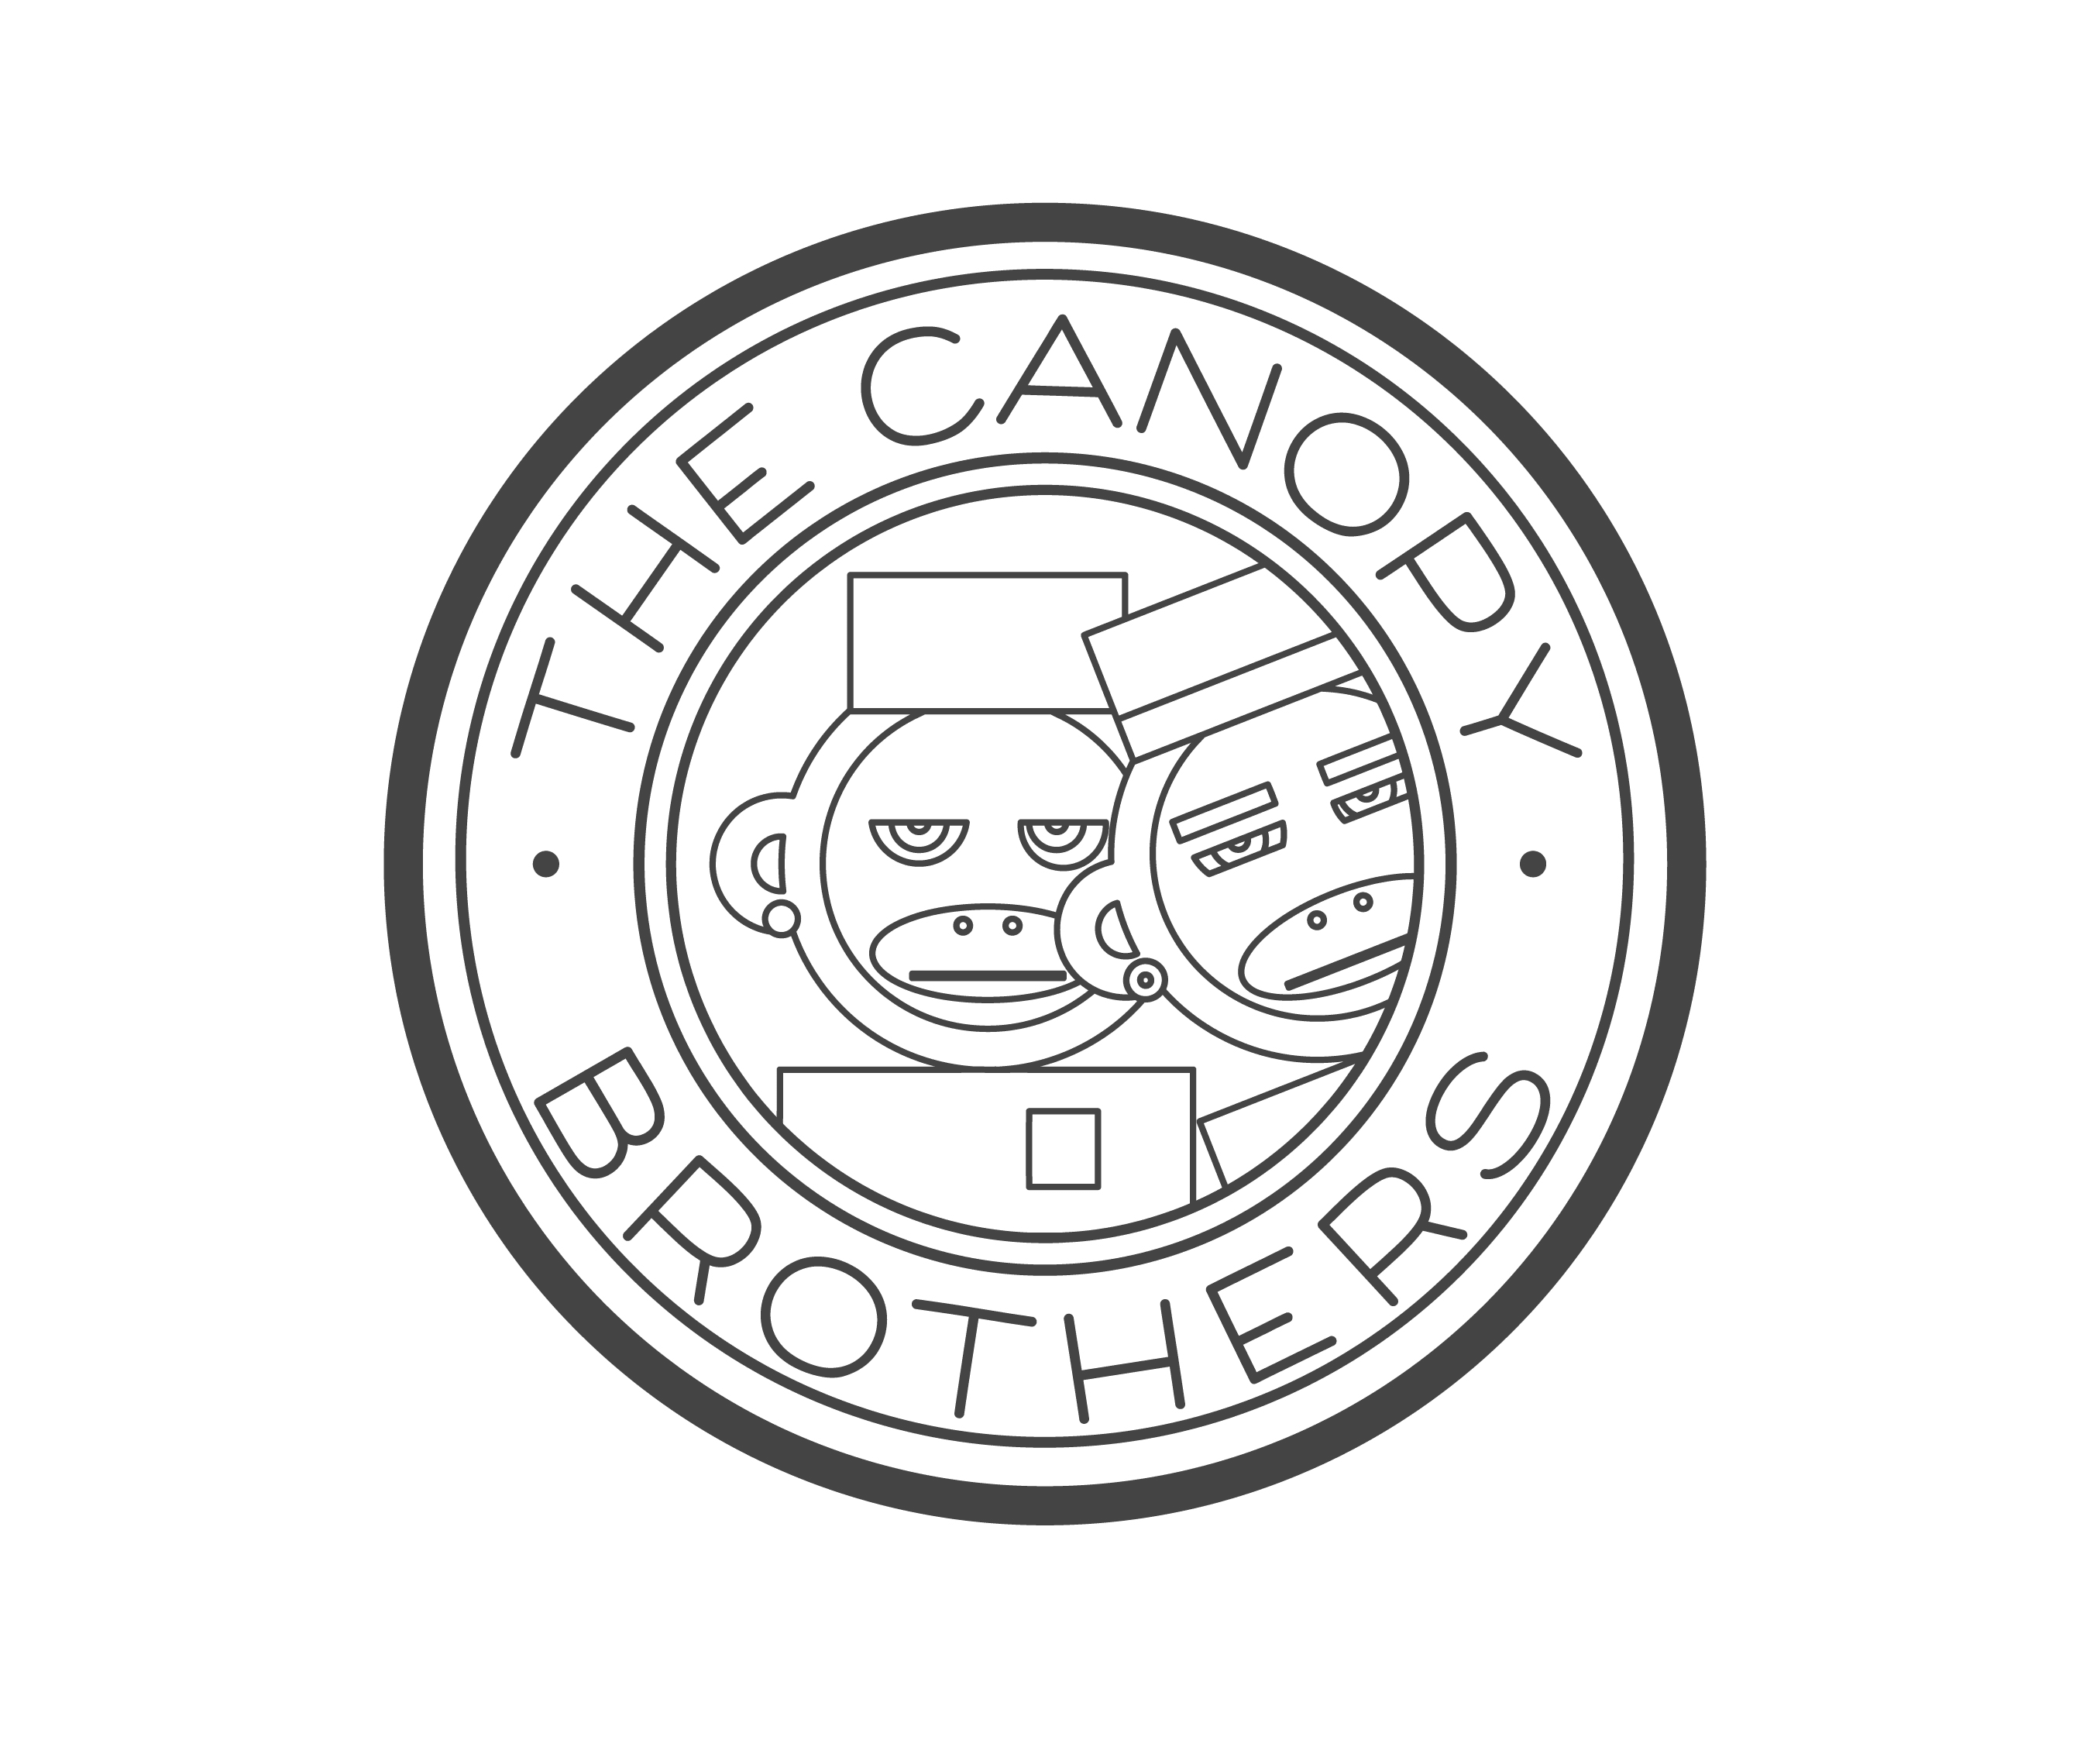 TheCanopyBrothers